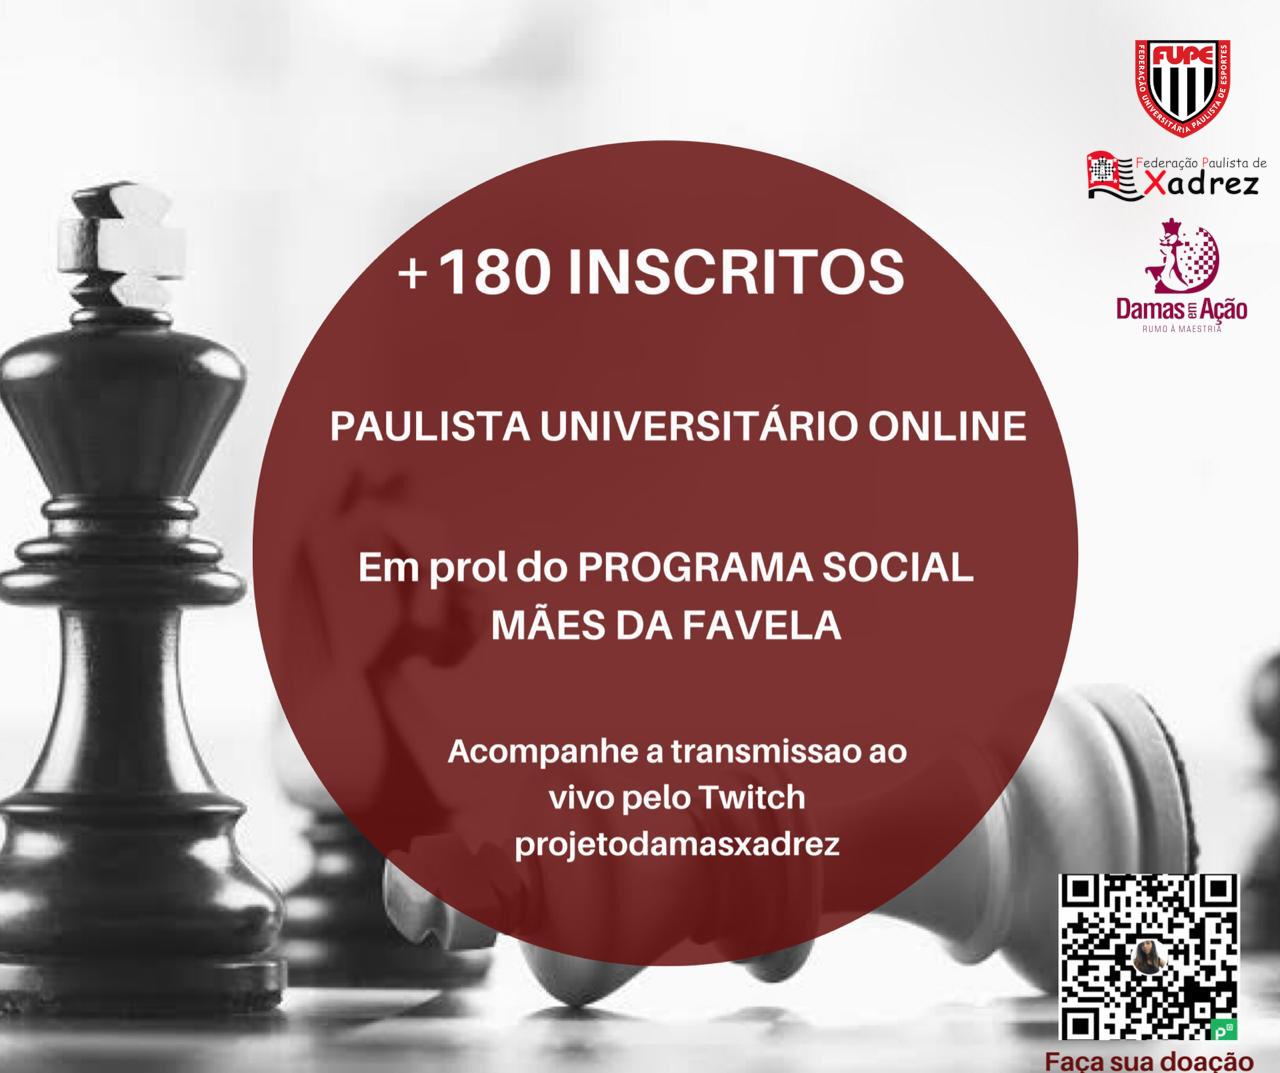 FUPE - Conheça os campeões do Campeonato Paulista Universitário Virtual de  Xadrez